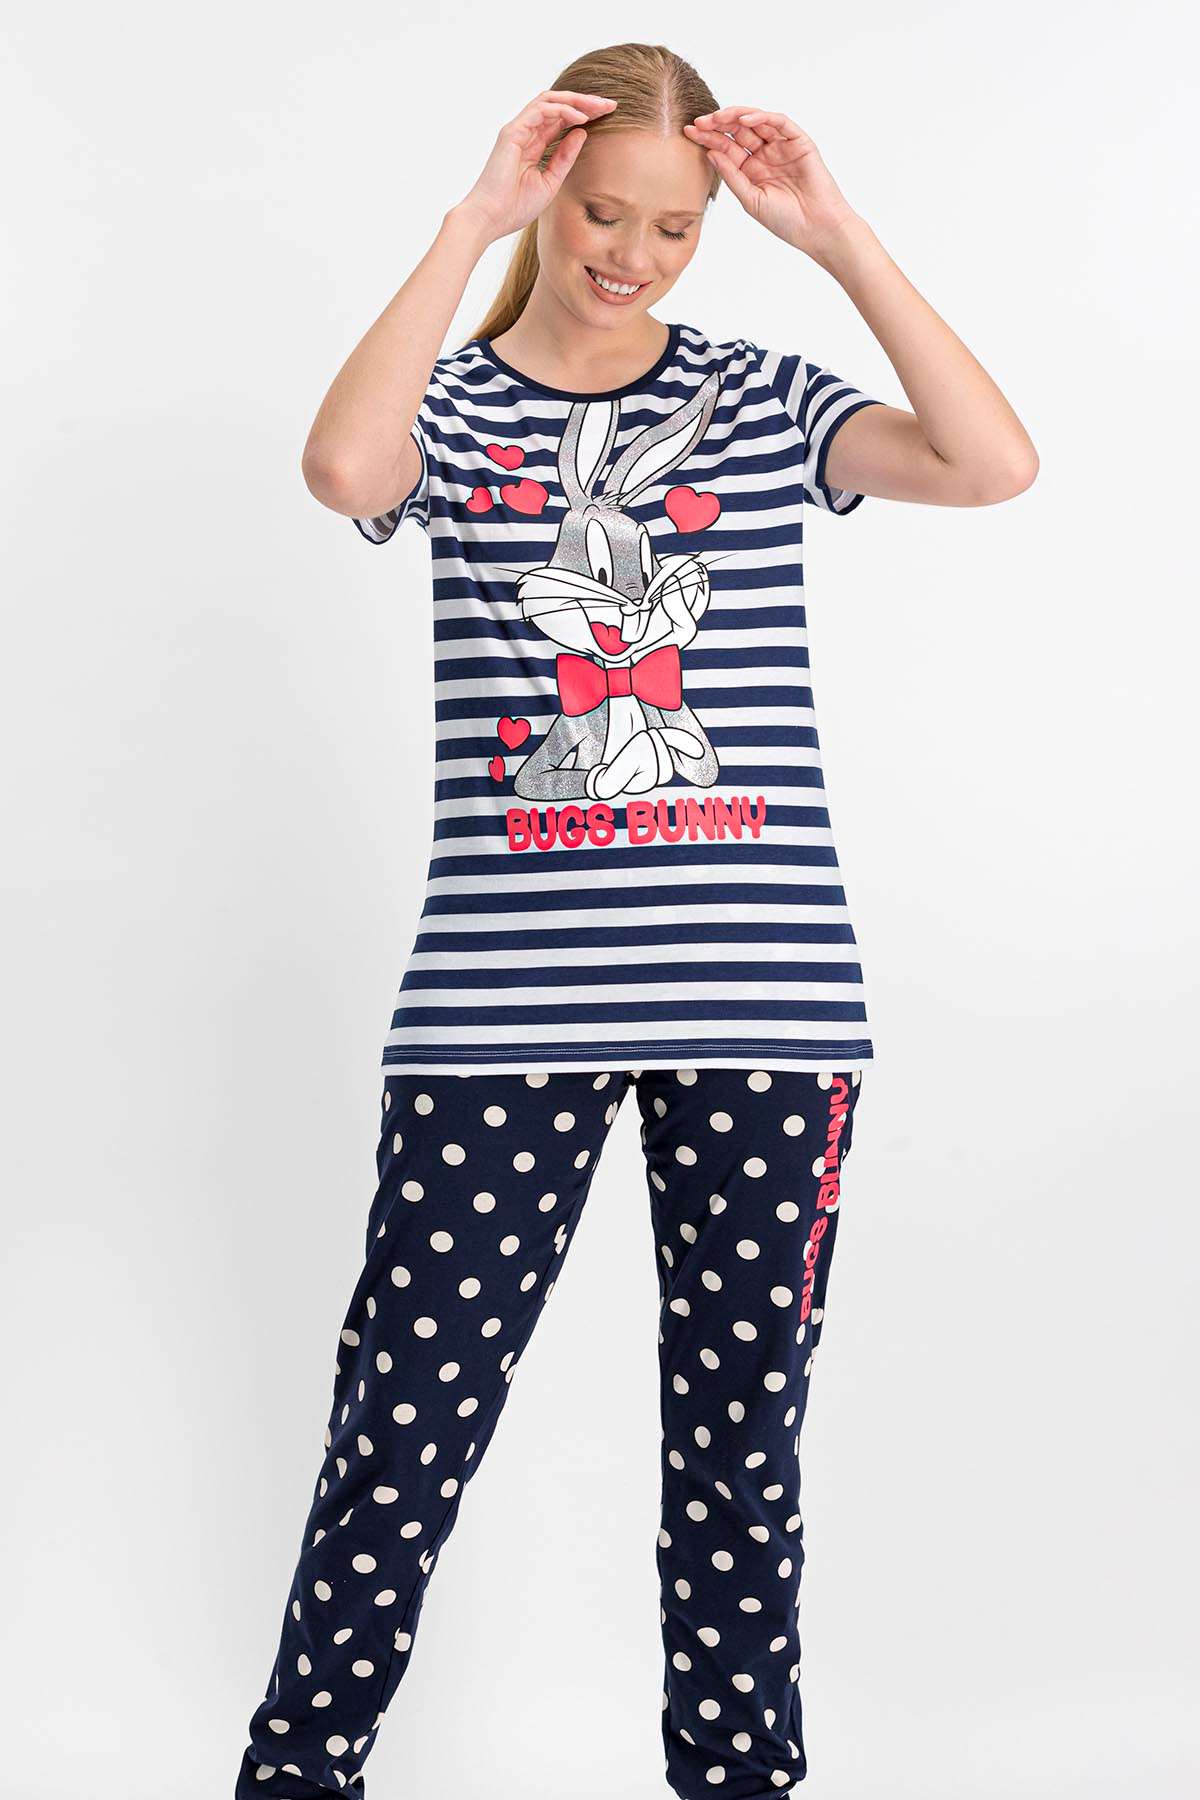 Bugs Bunny - Bugs Bunny Lisanslı Lisanslı Lacivert Kısa Kollu Kadın Pijama Takımı